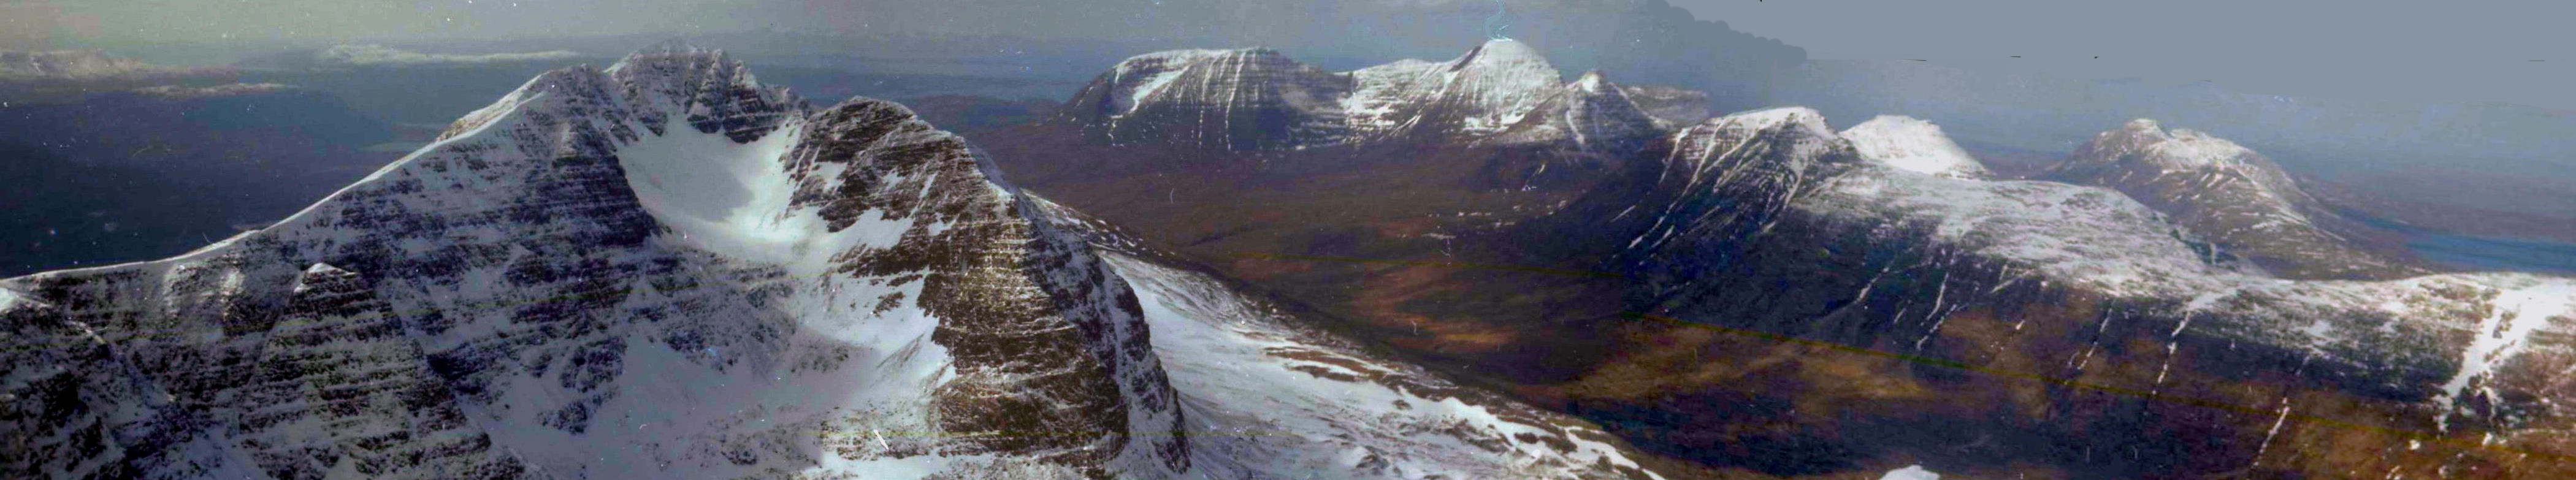 Snow-bound Liathach, Beinn Alligin and Beinn Dearg in winter in the Torridon region of the North West Highlands of Scotland